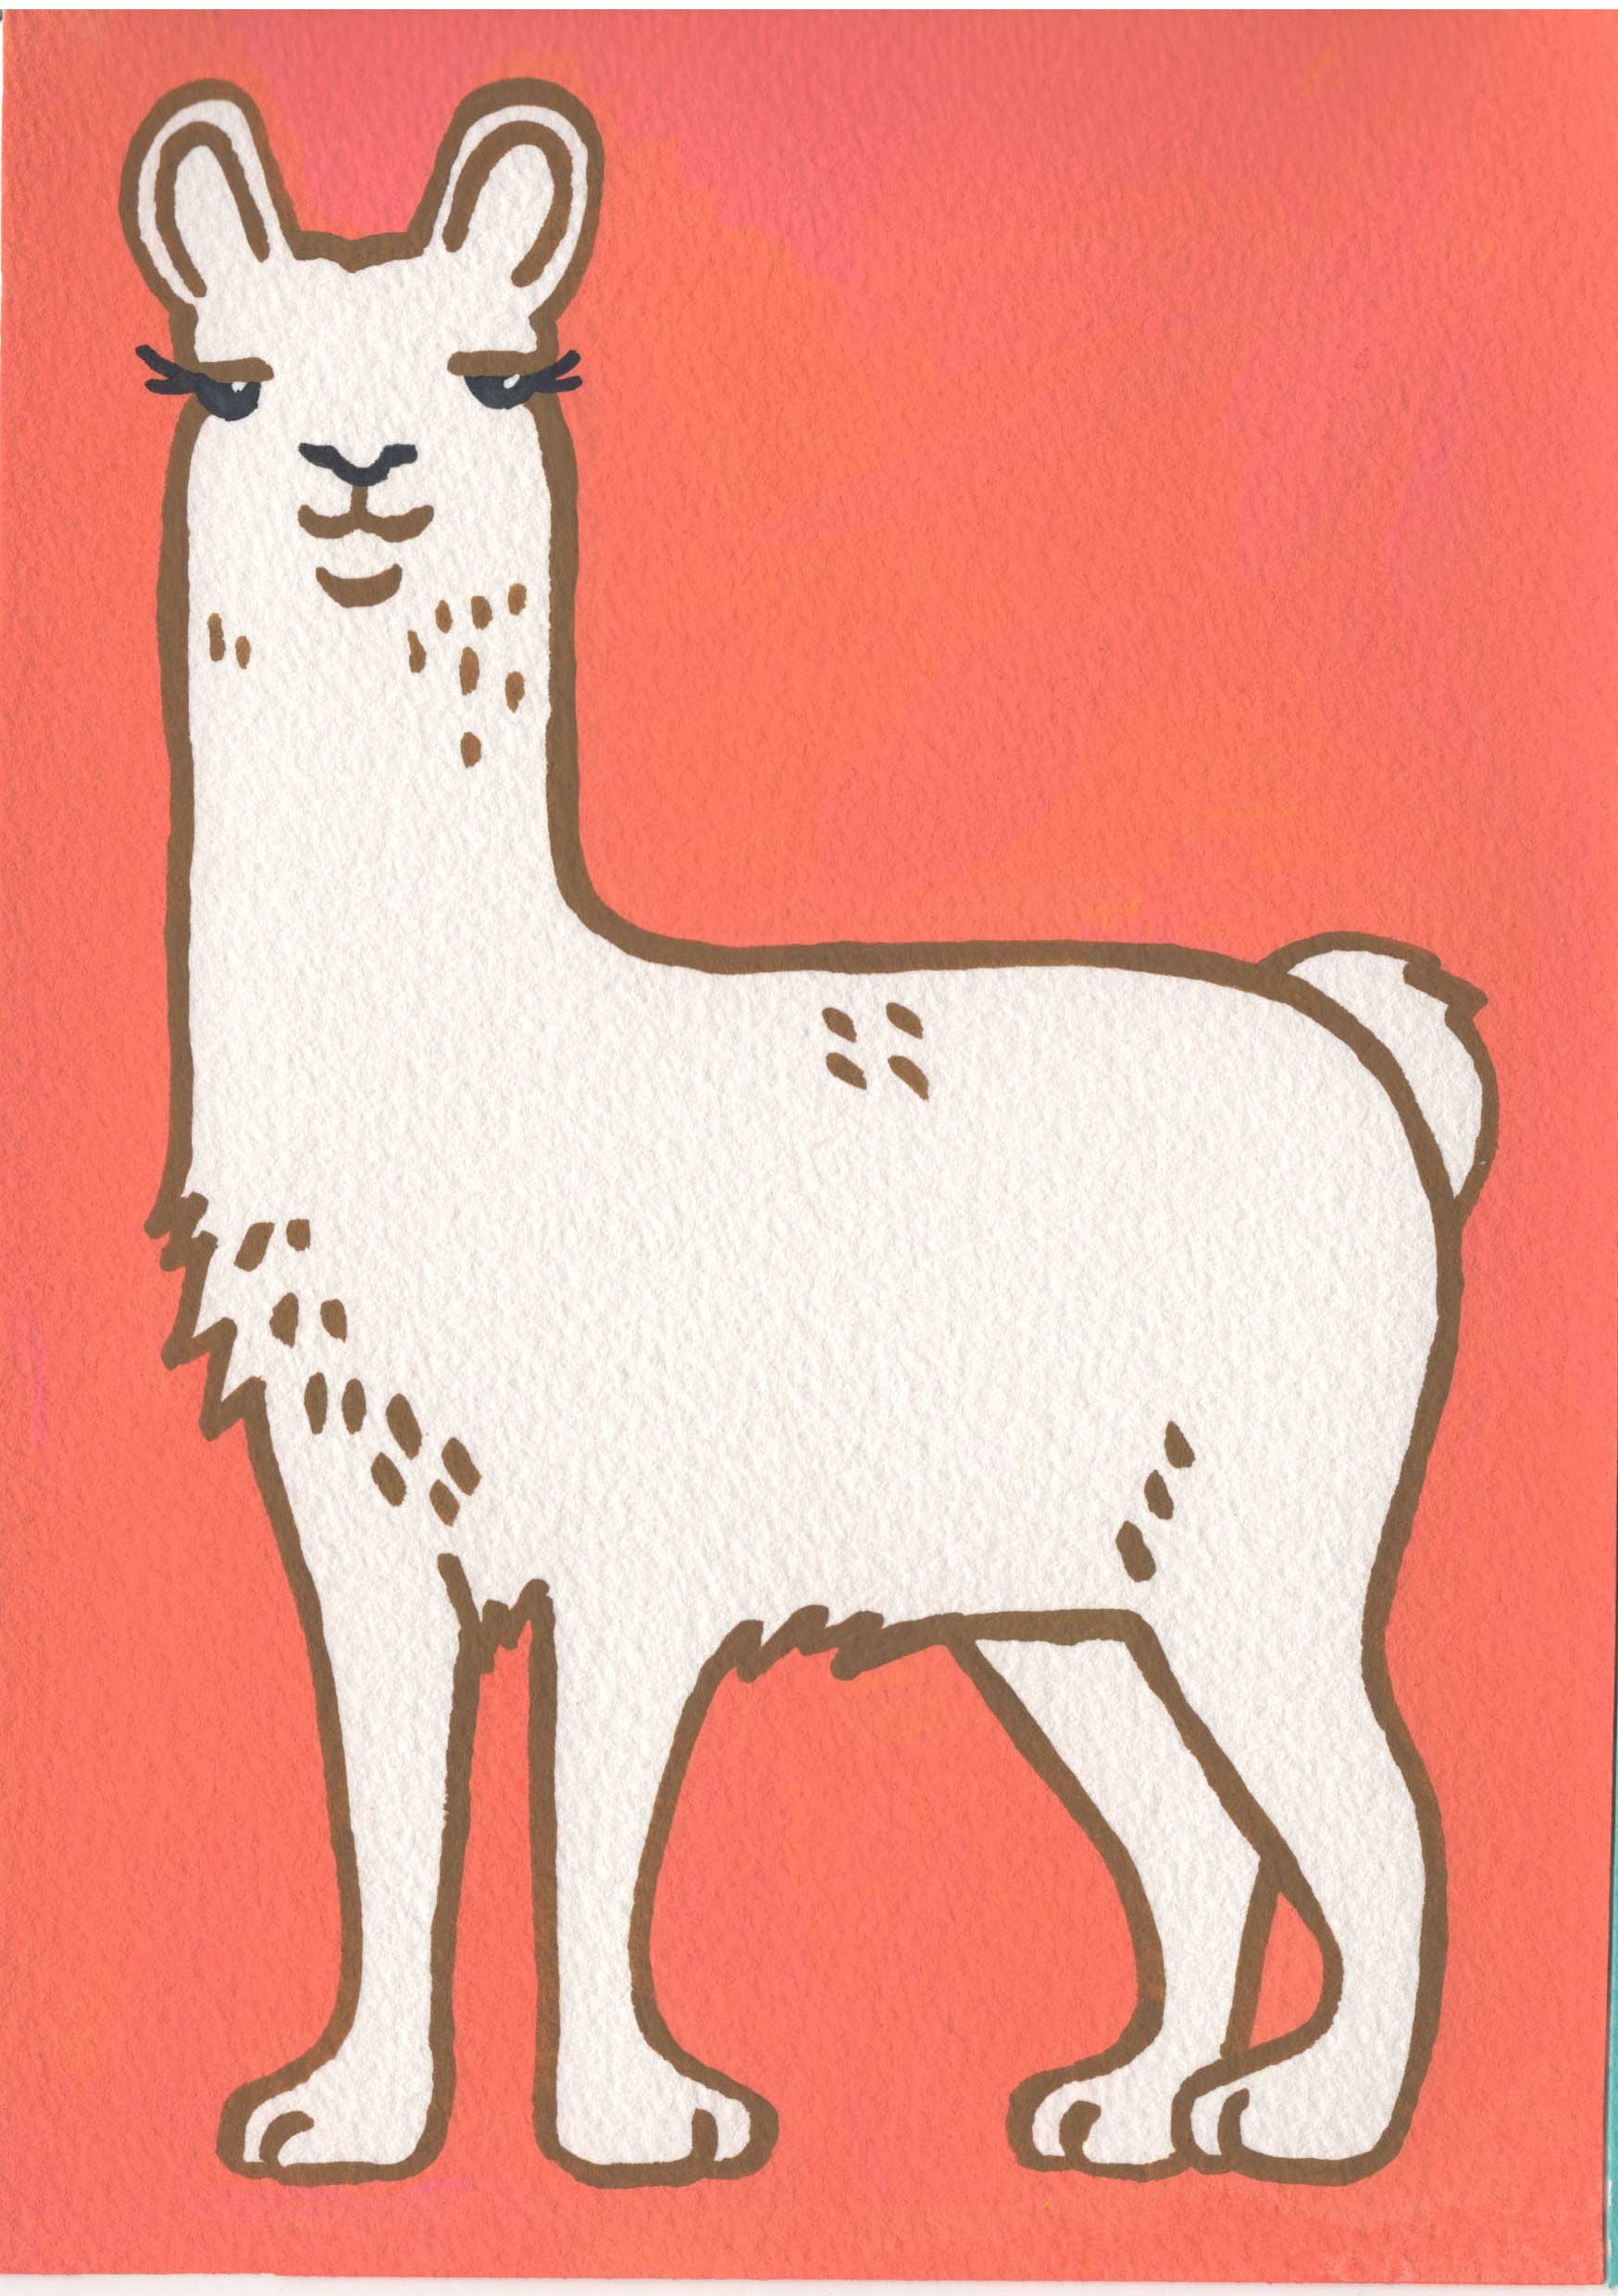 Llama.jpg